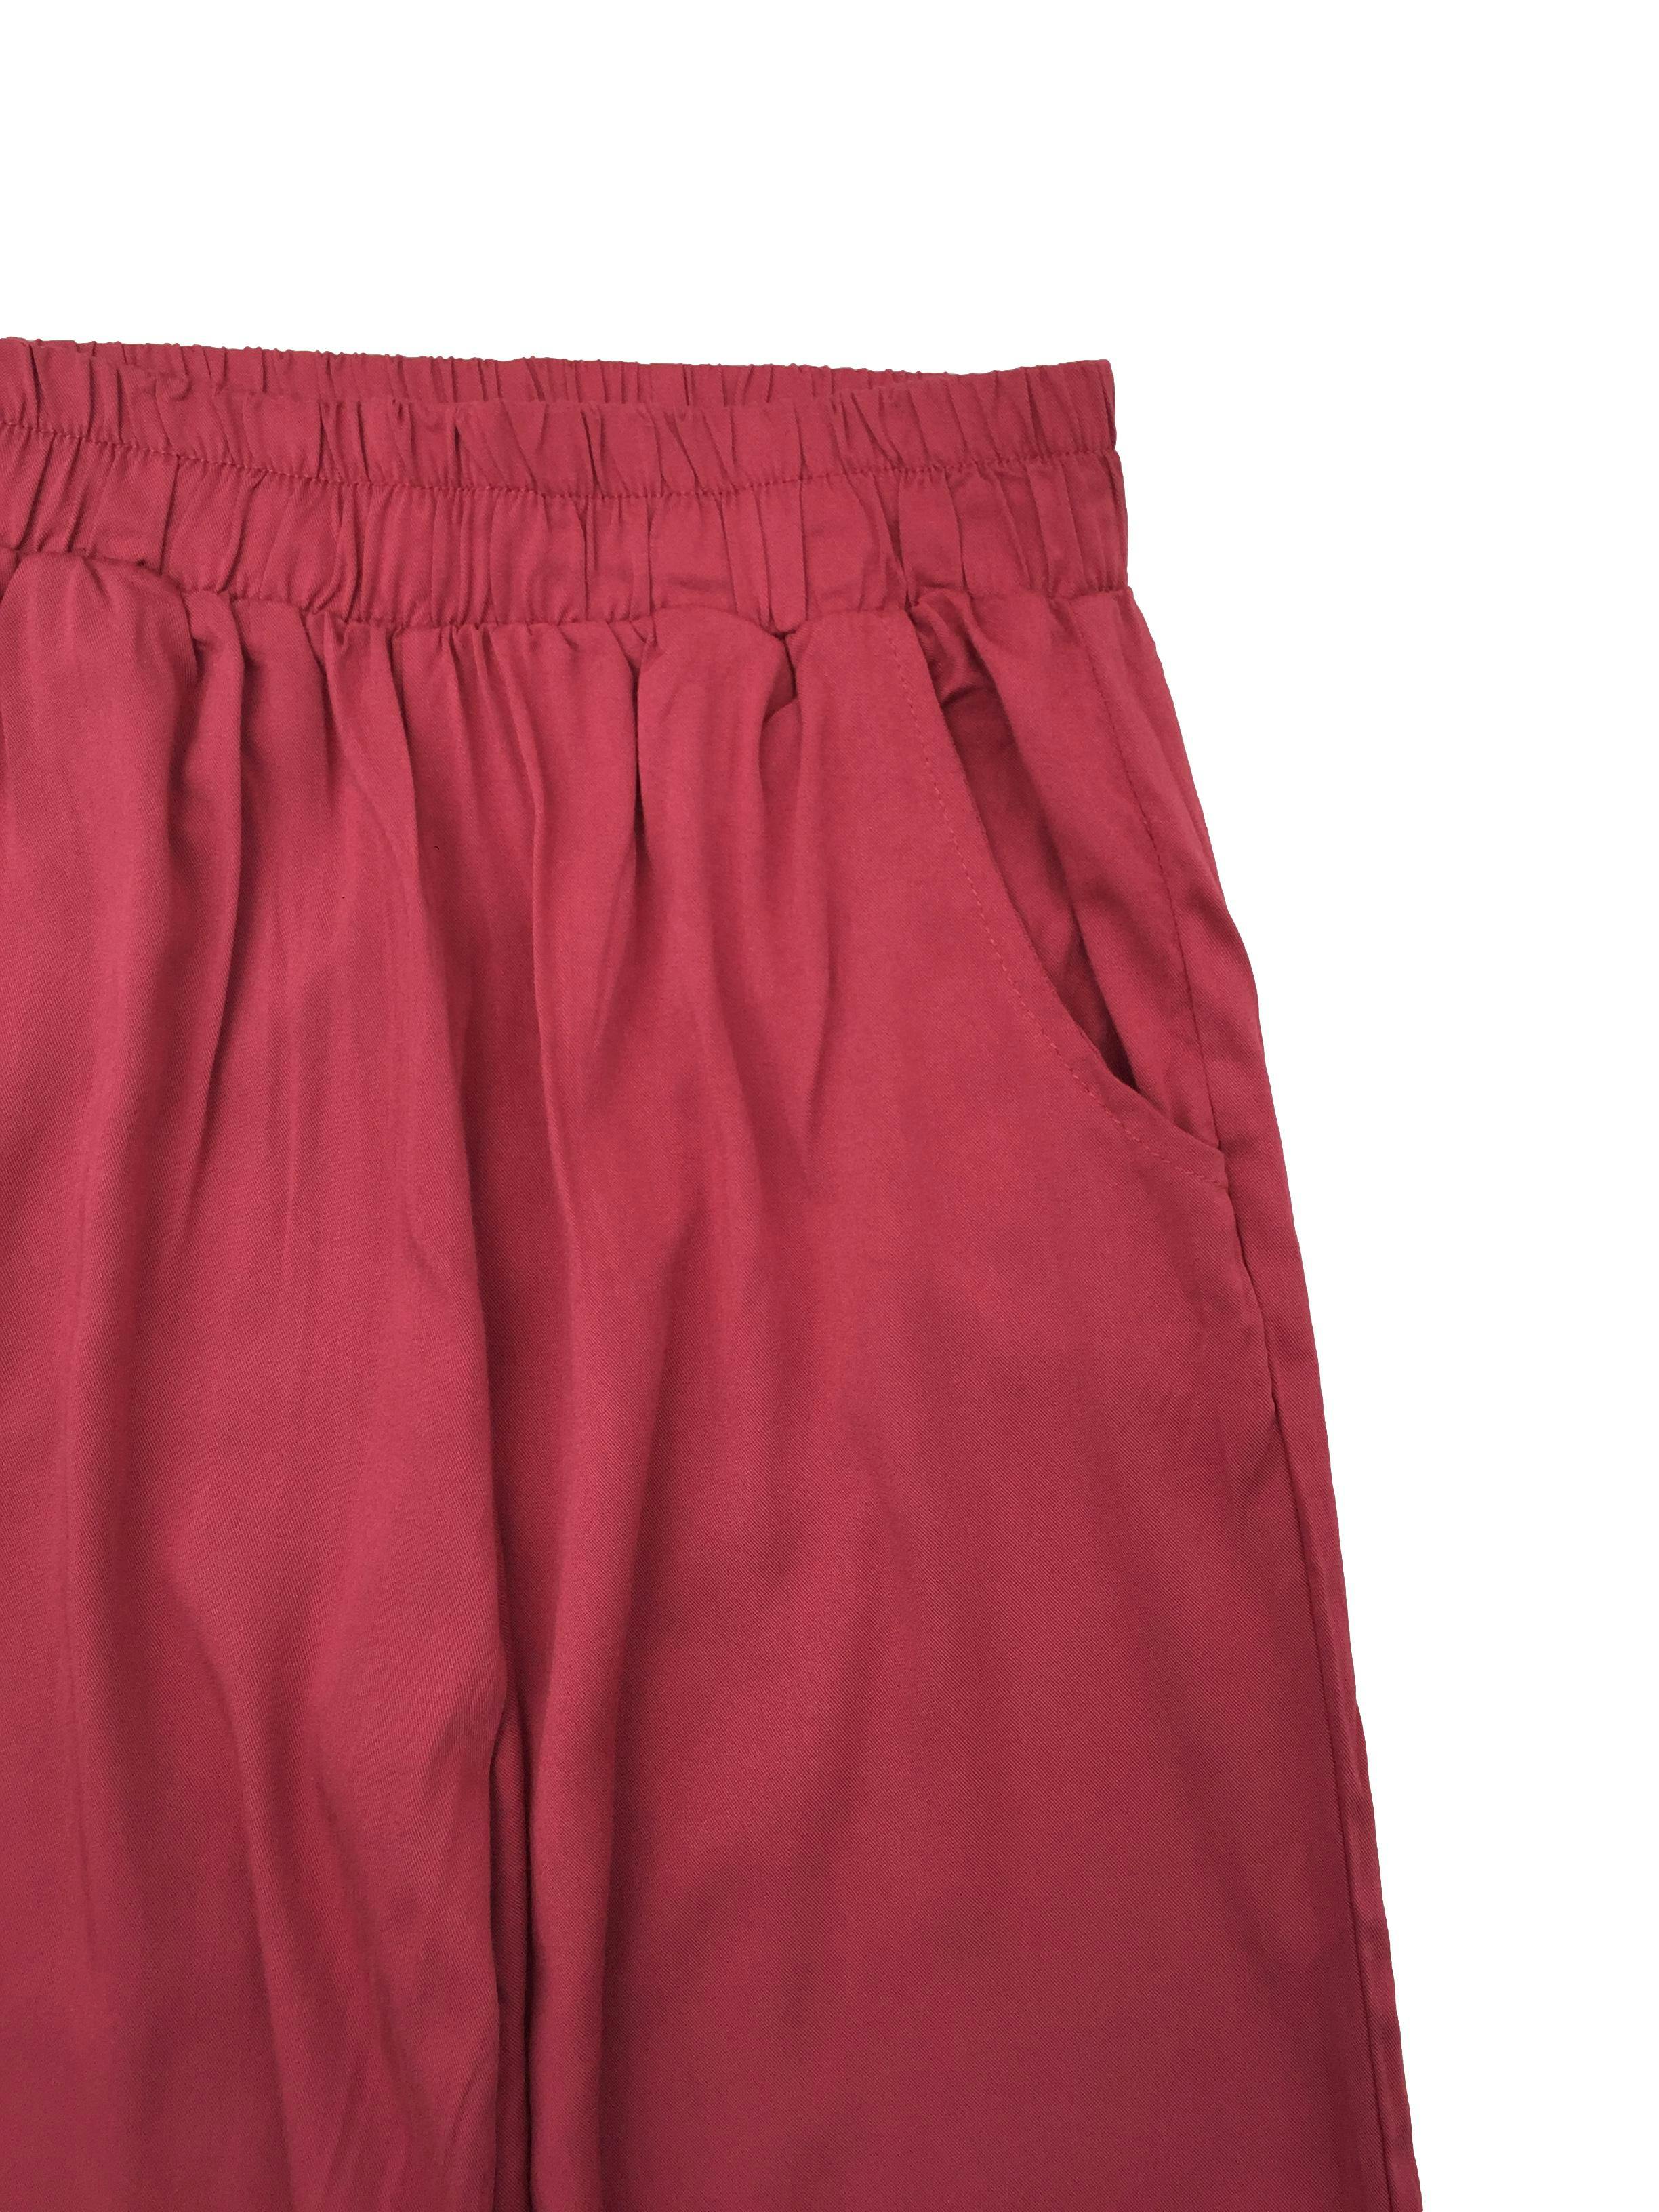 Pantalón rojo de tela fresca, corte recto con bolsillos, pretina elástica y bolsillos. Cintura 60cm sin estirar, Tiro 31cm Largo 100cm.